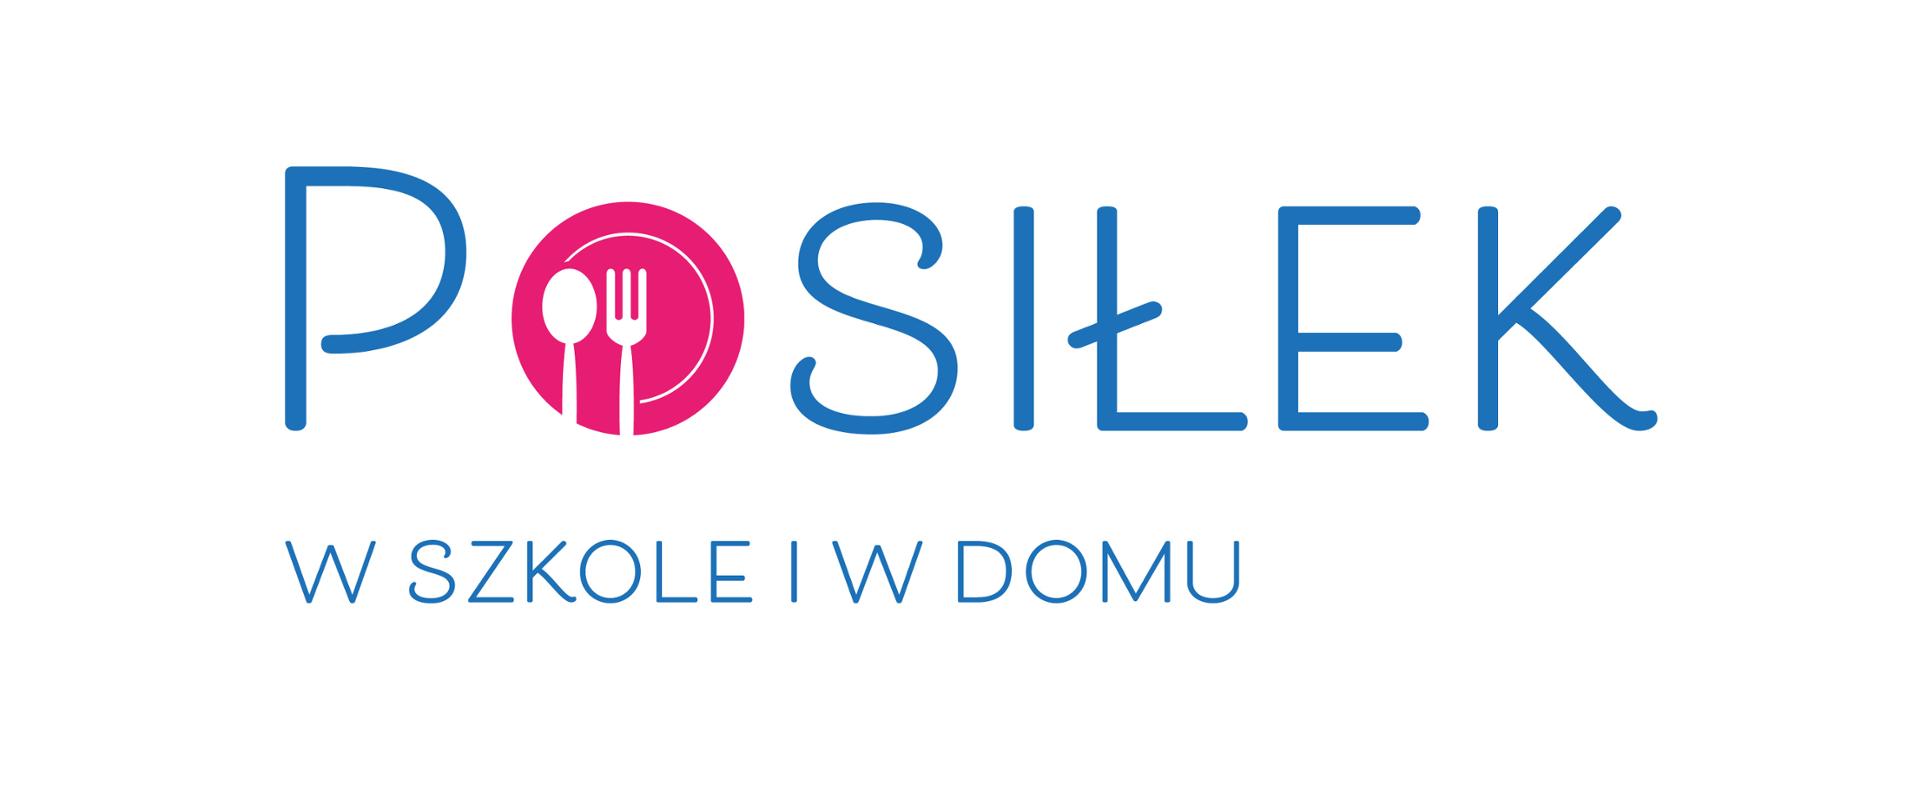 Gmina Sulechów otrzymała dotację z programu „Posiłek w szkole i w domu”